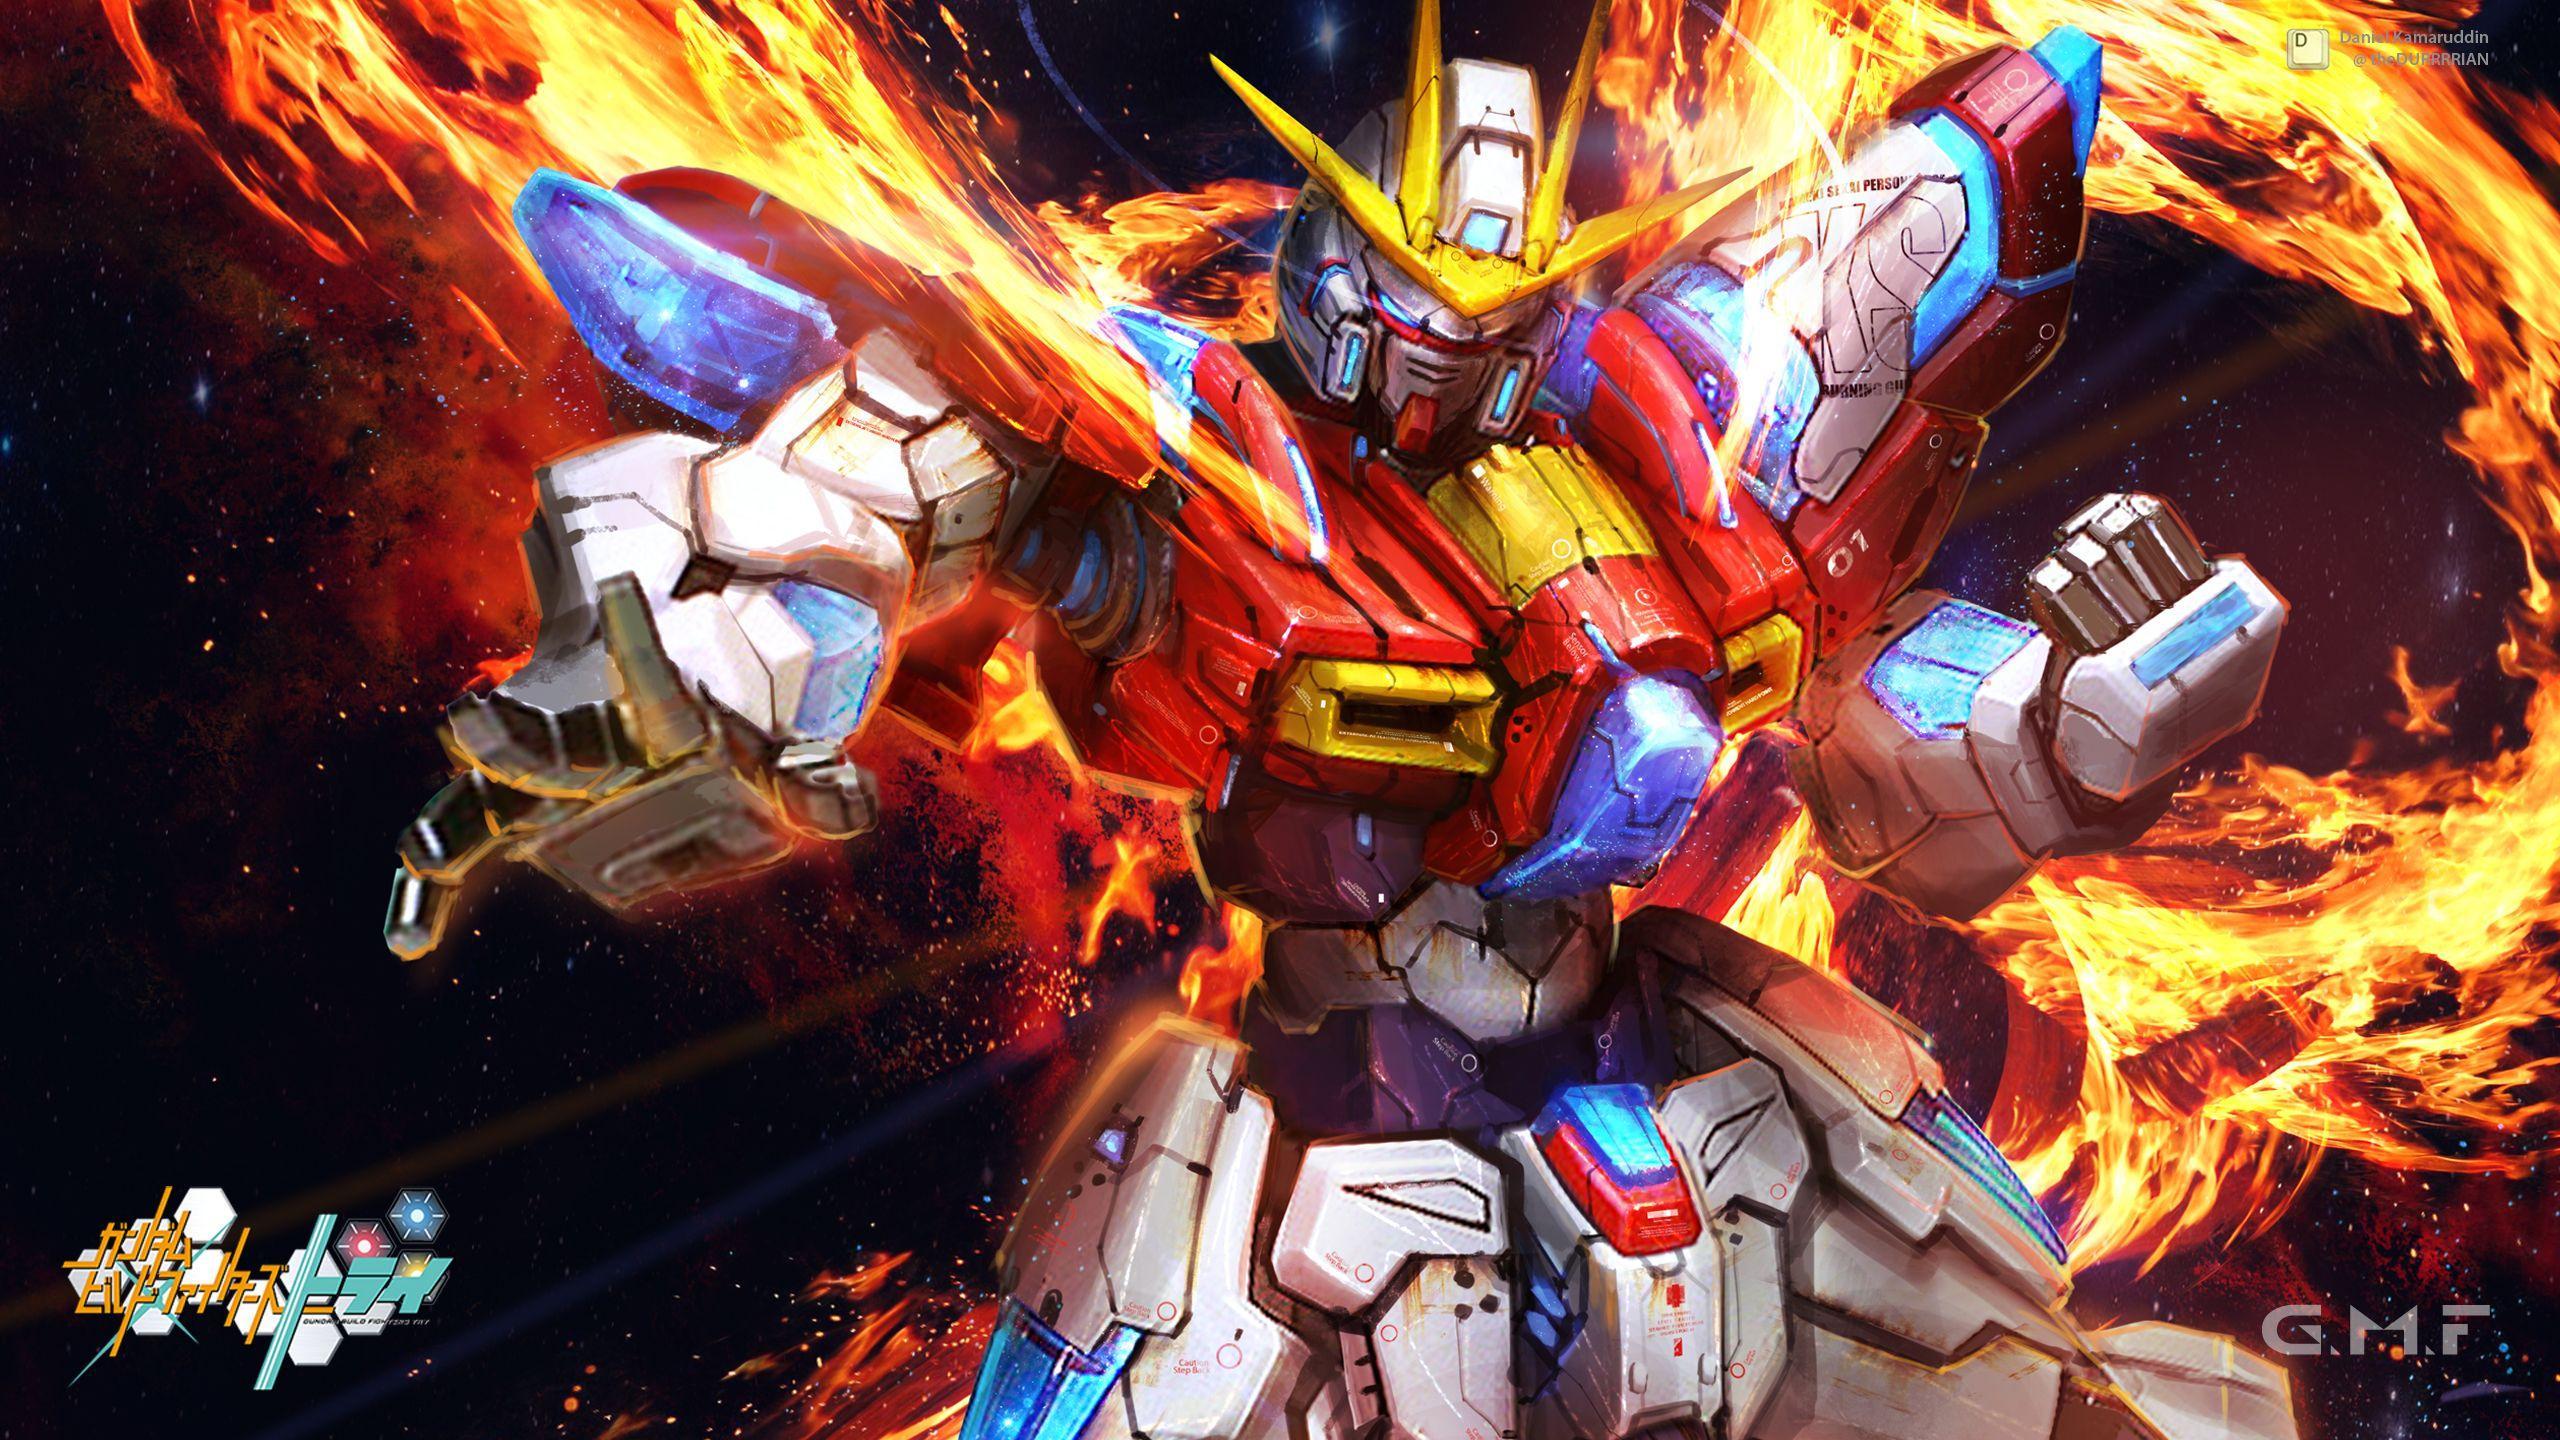 2560 x 1440 · jpeg - Wallpapers Gundam - Wallpaper Cave